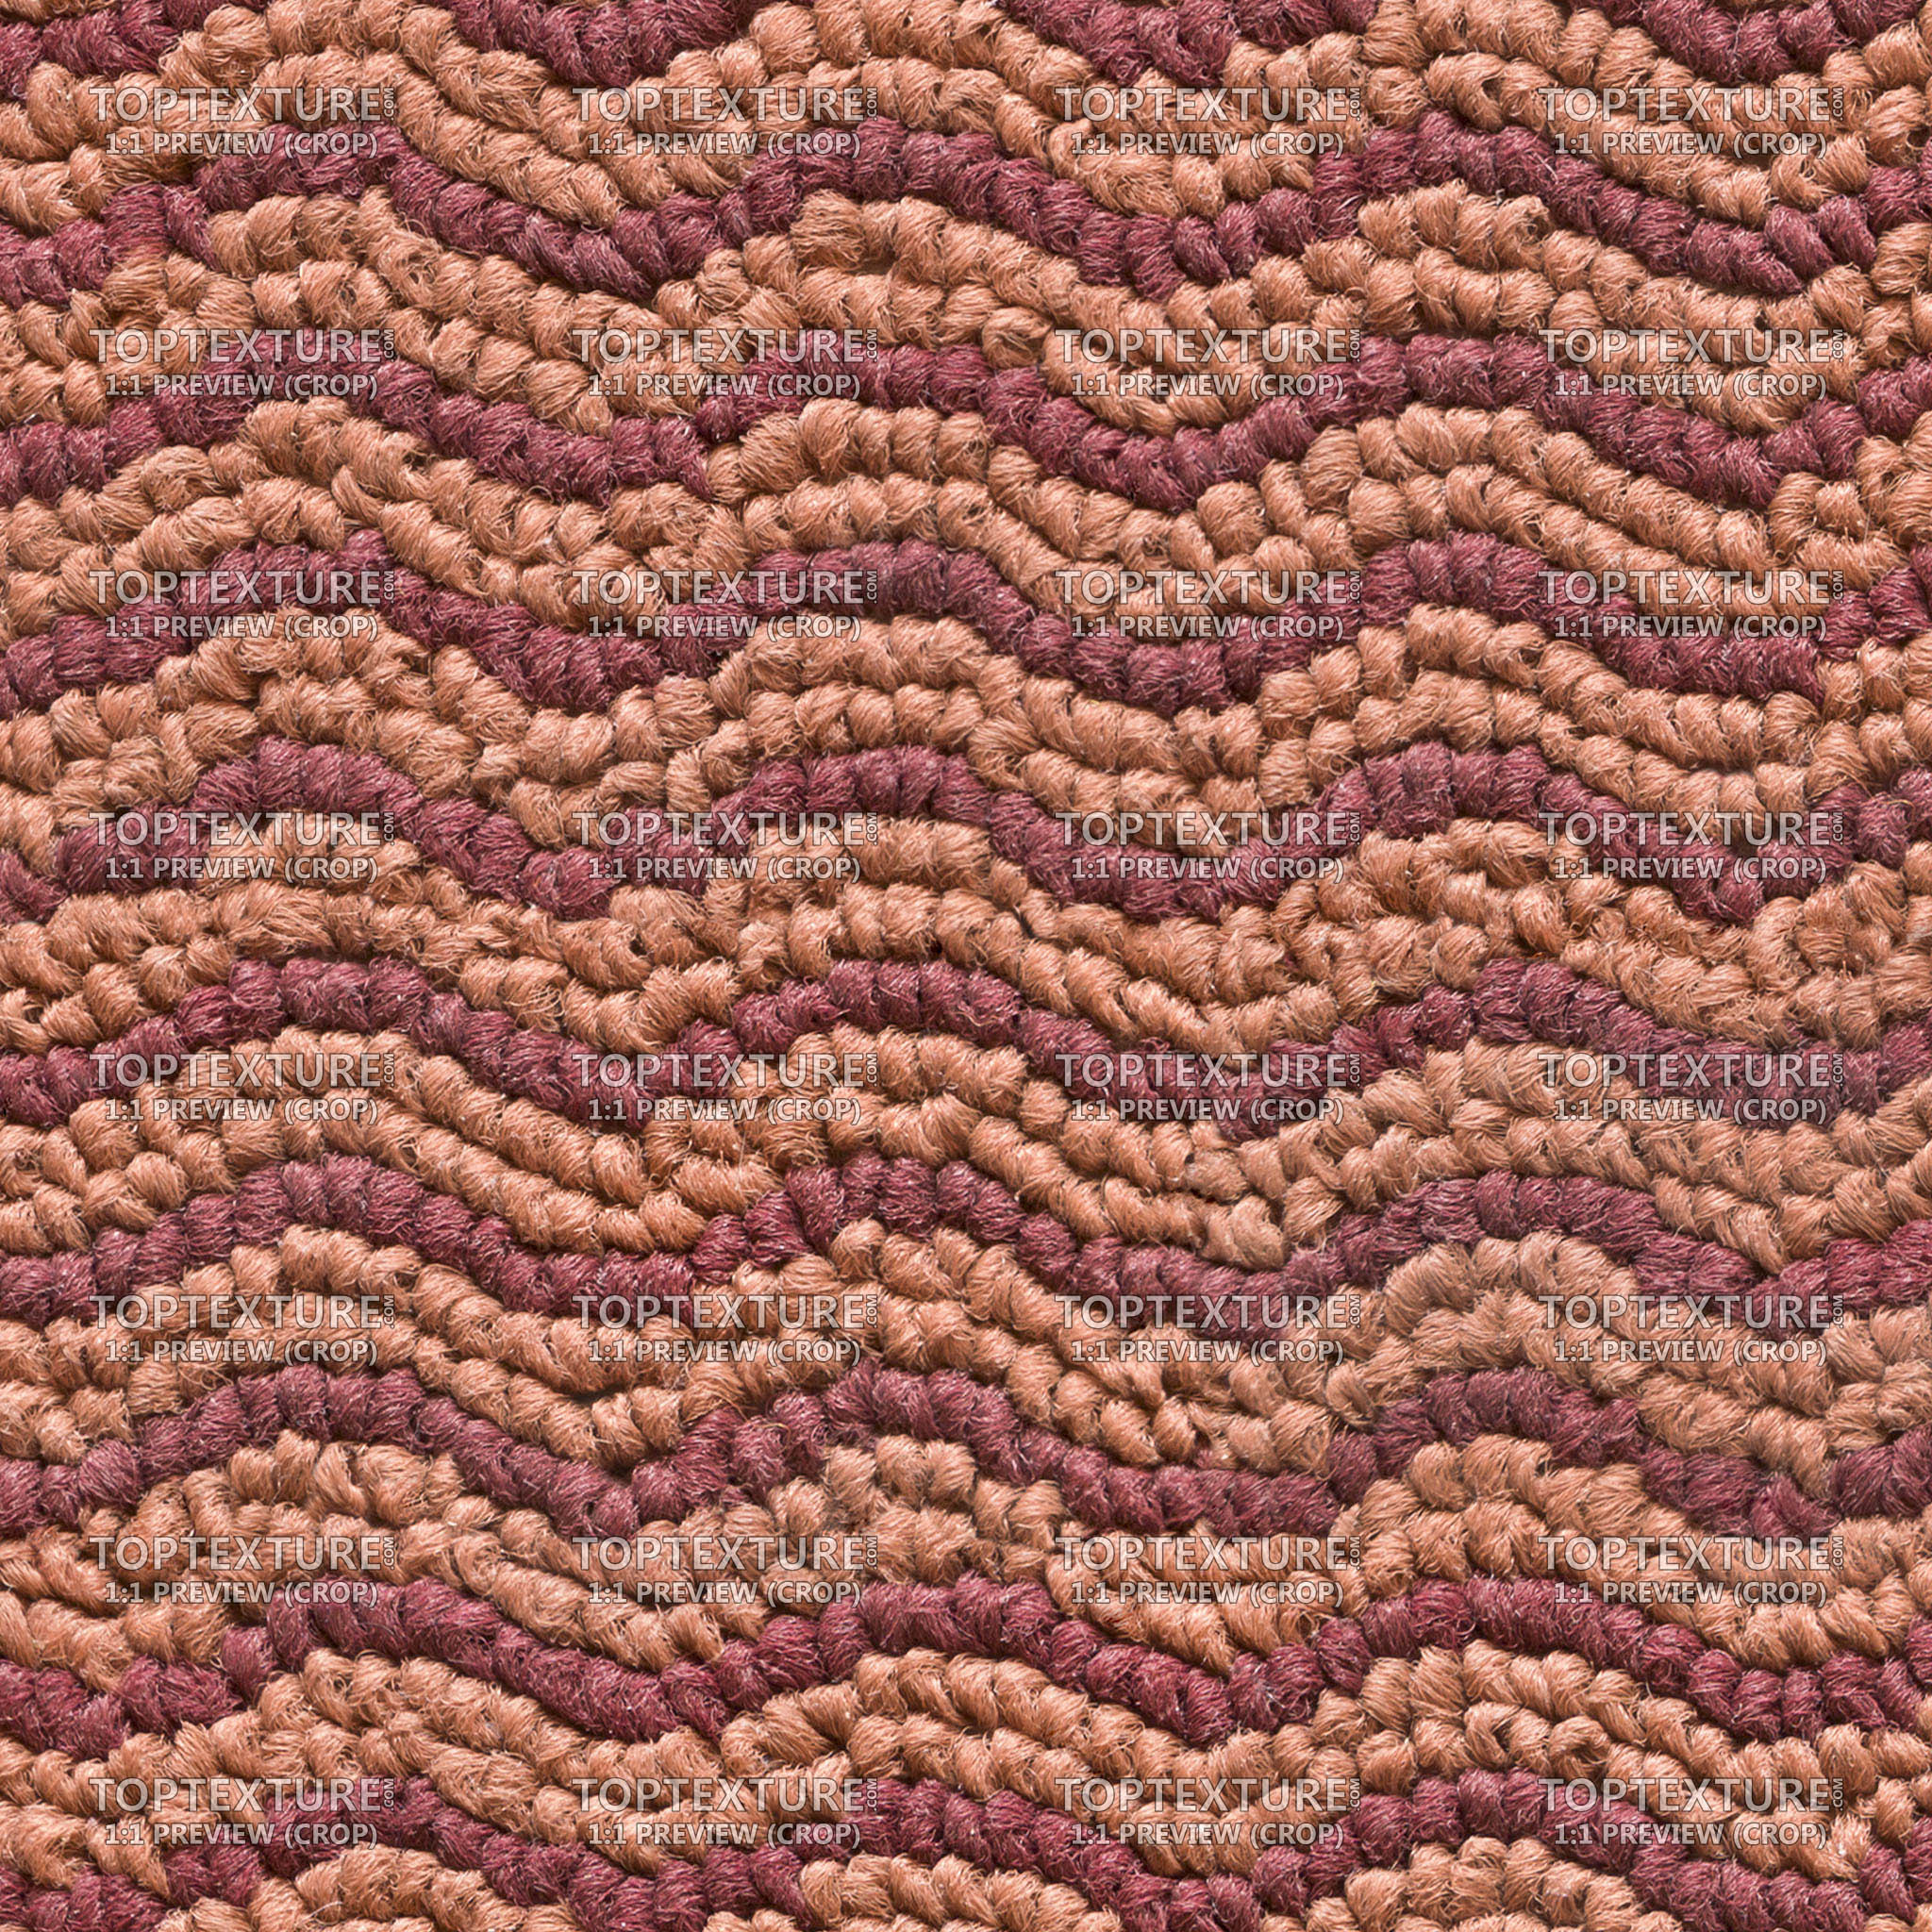 Moquette Carpet Waves - 100% zoom